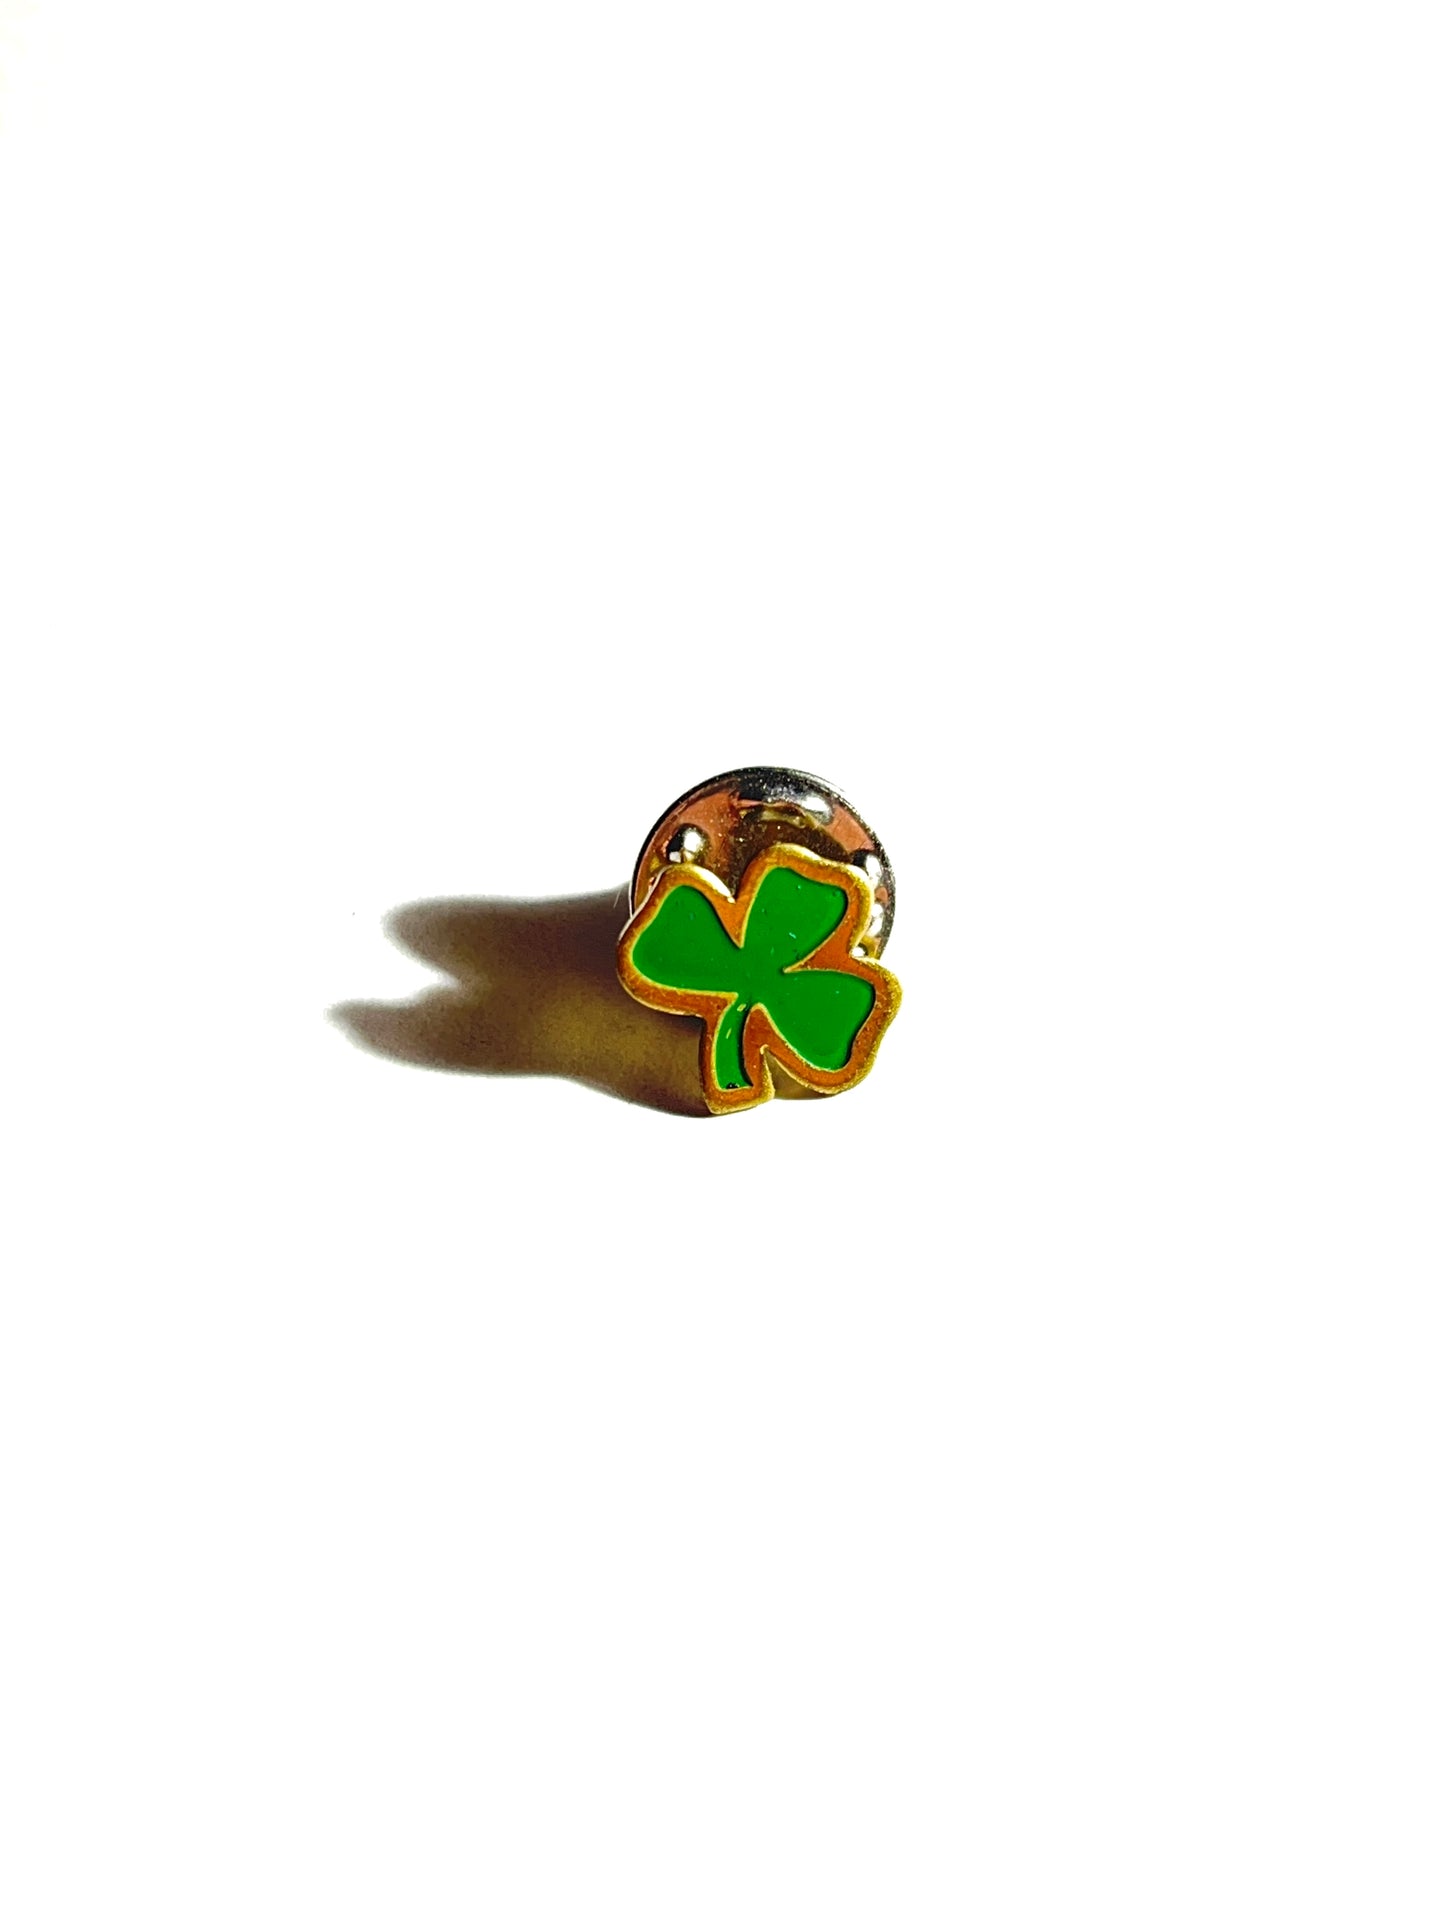 Vintage Irish Clover Pin Metal